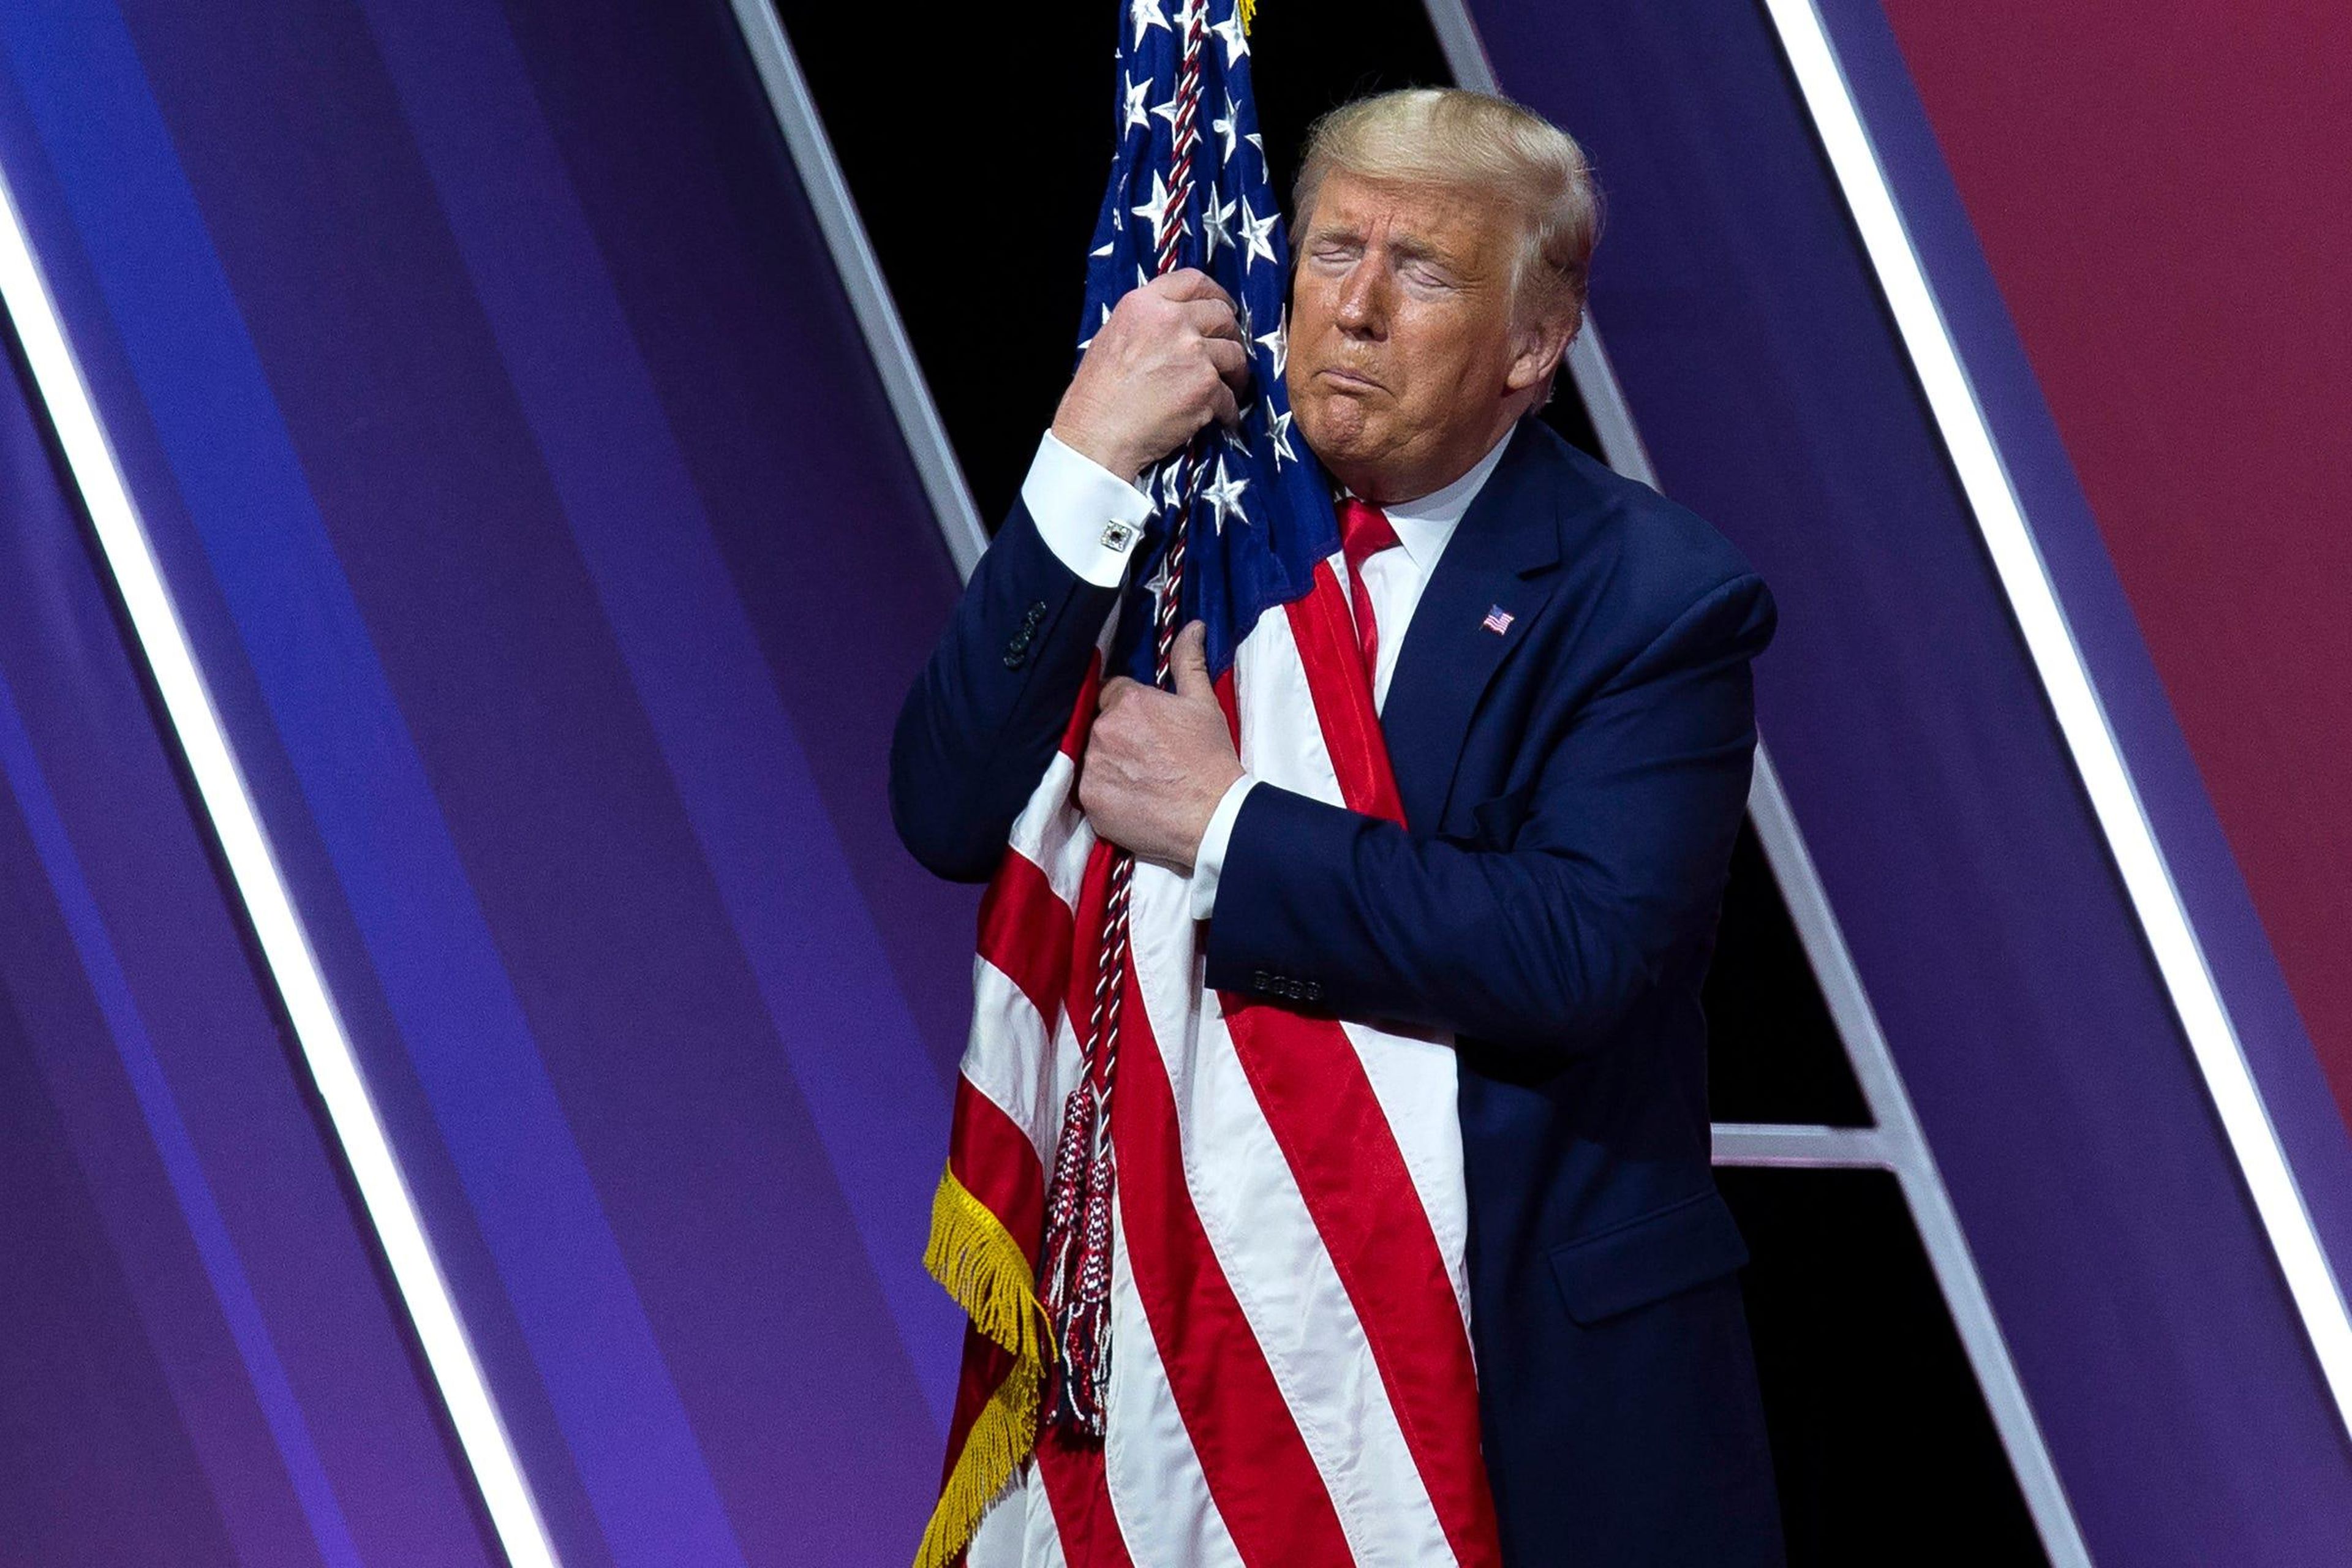 El presidente Donald Trump abraza y besa la bandera estadounidense.